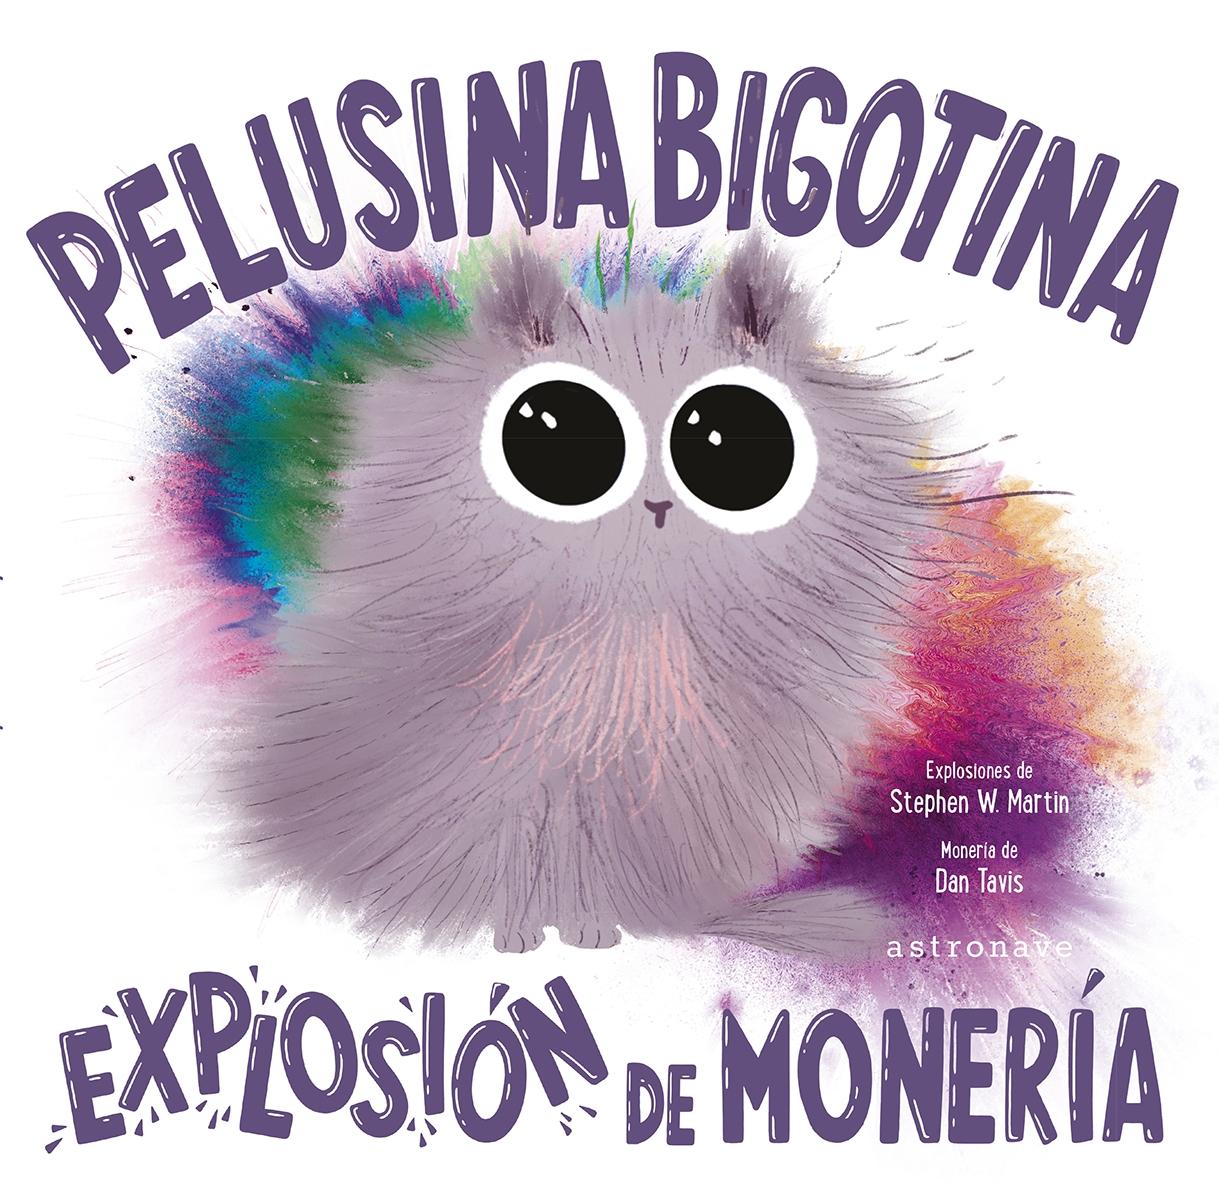 Pelusina Bigotina  "Explosión de Monería "